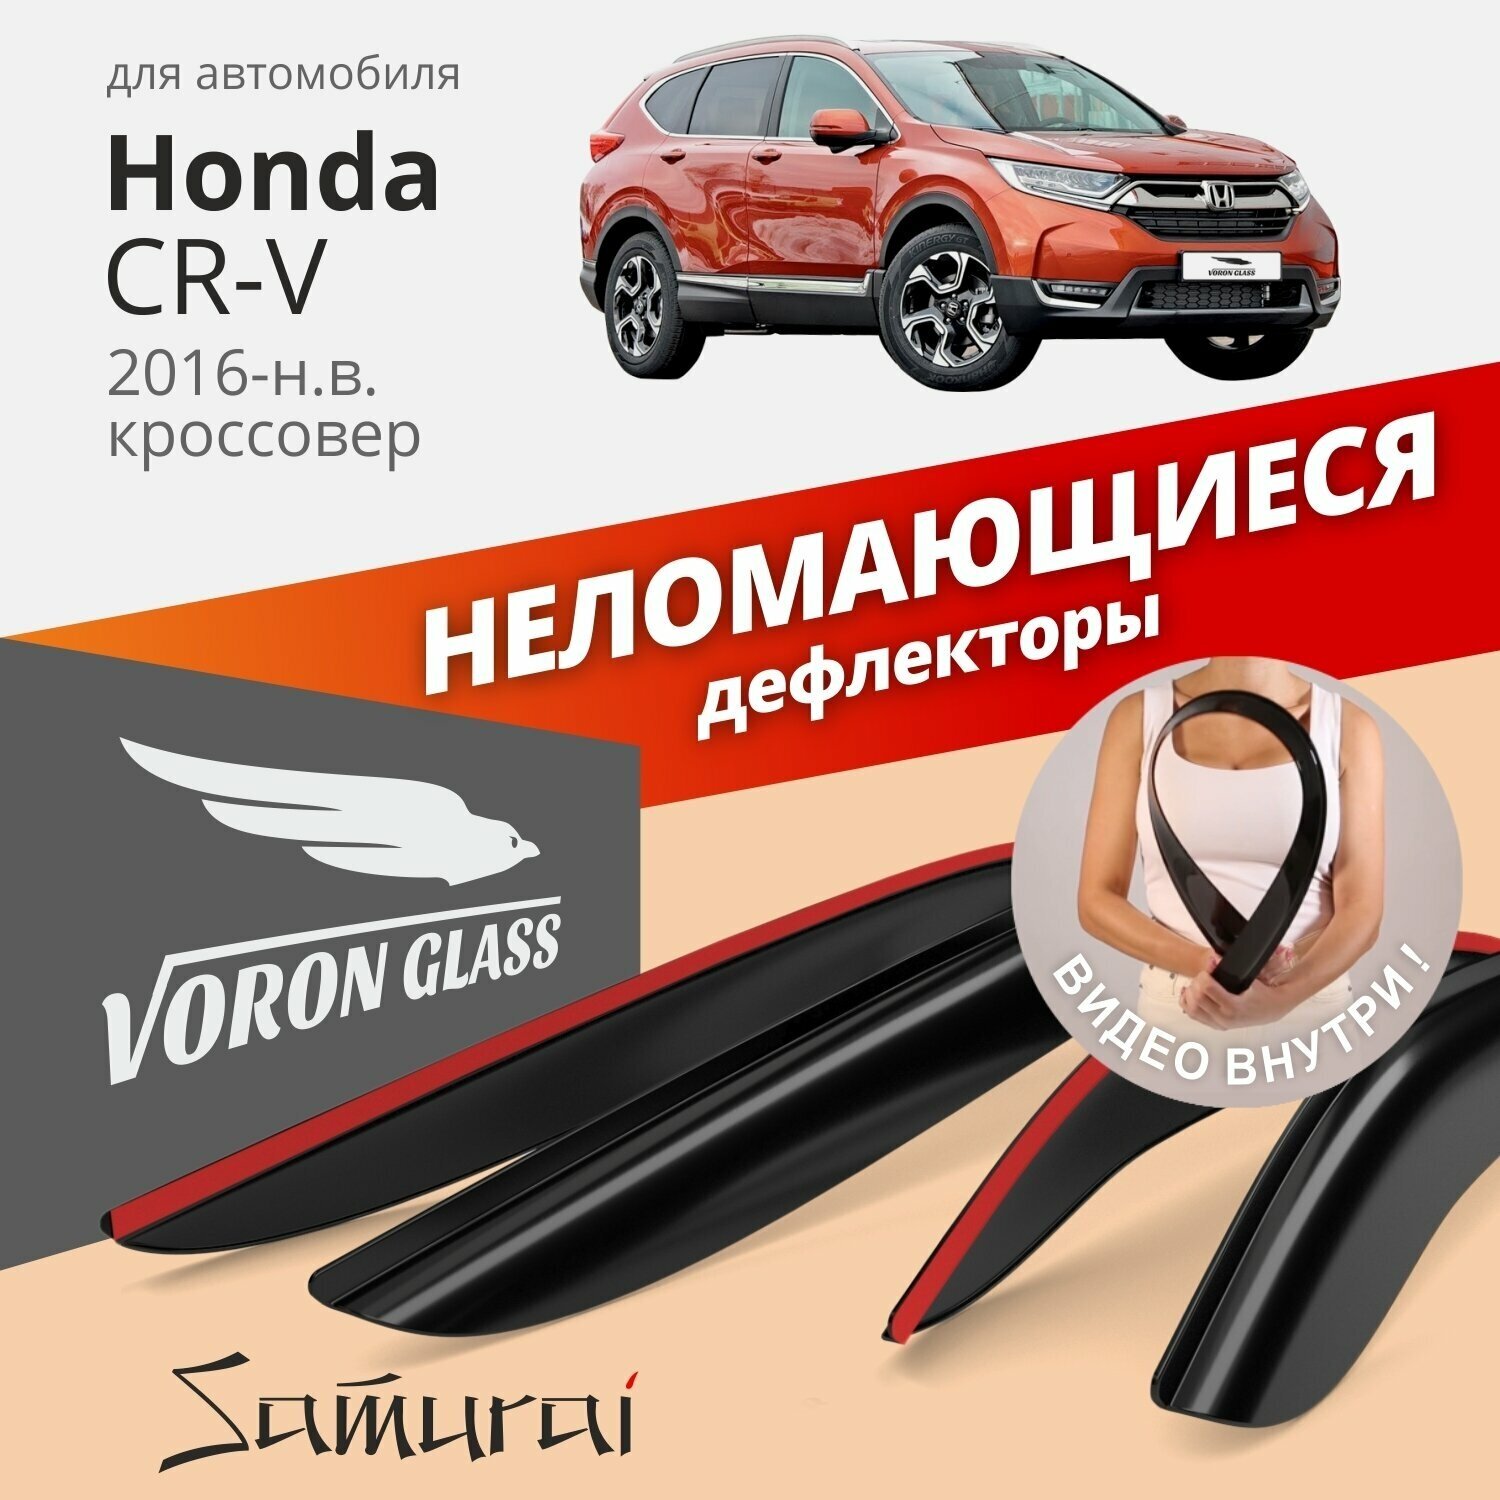 Дефлекторы окон неломающиеся Voron Glass серия Samurai для Honda CR-V V 2016-н. в.